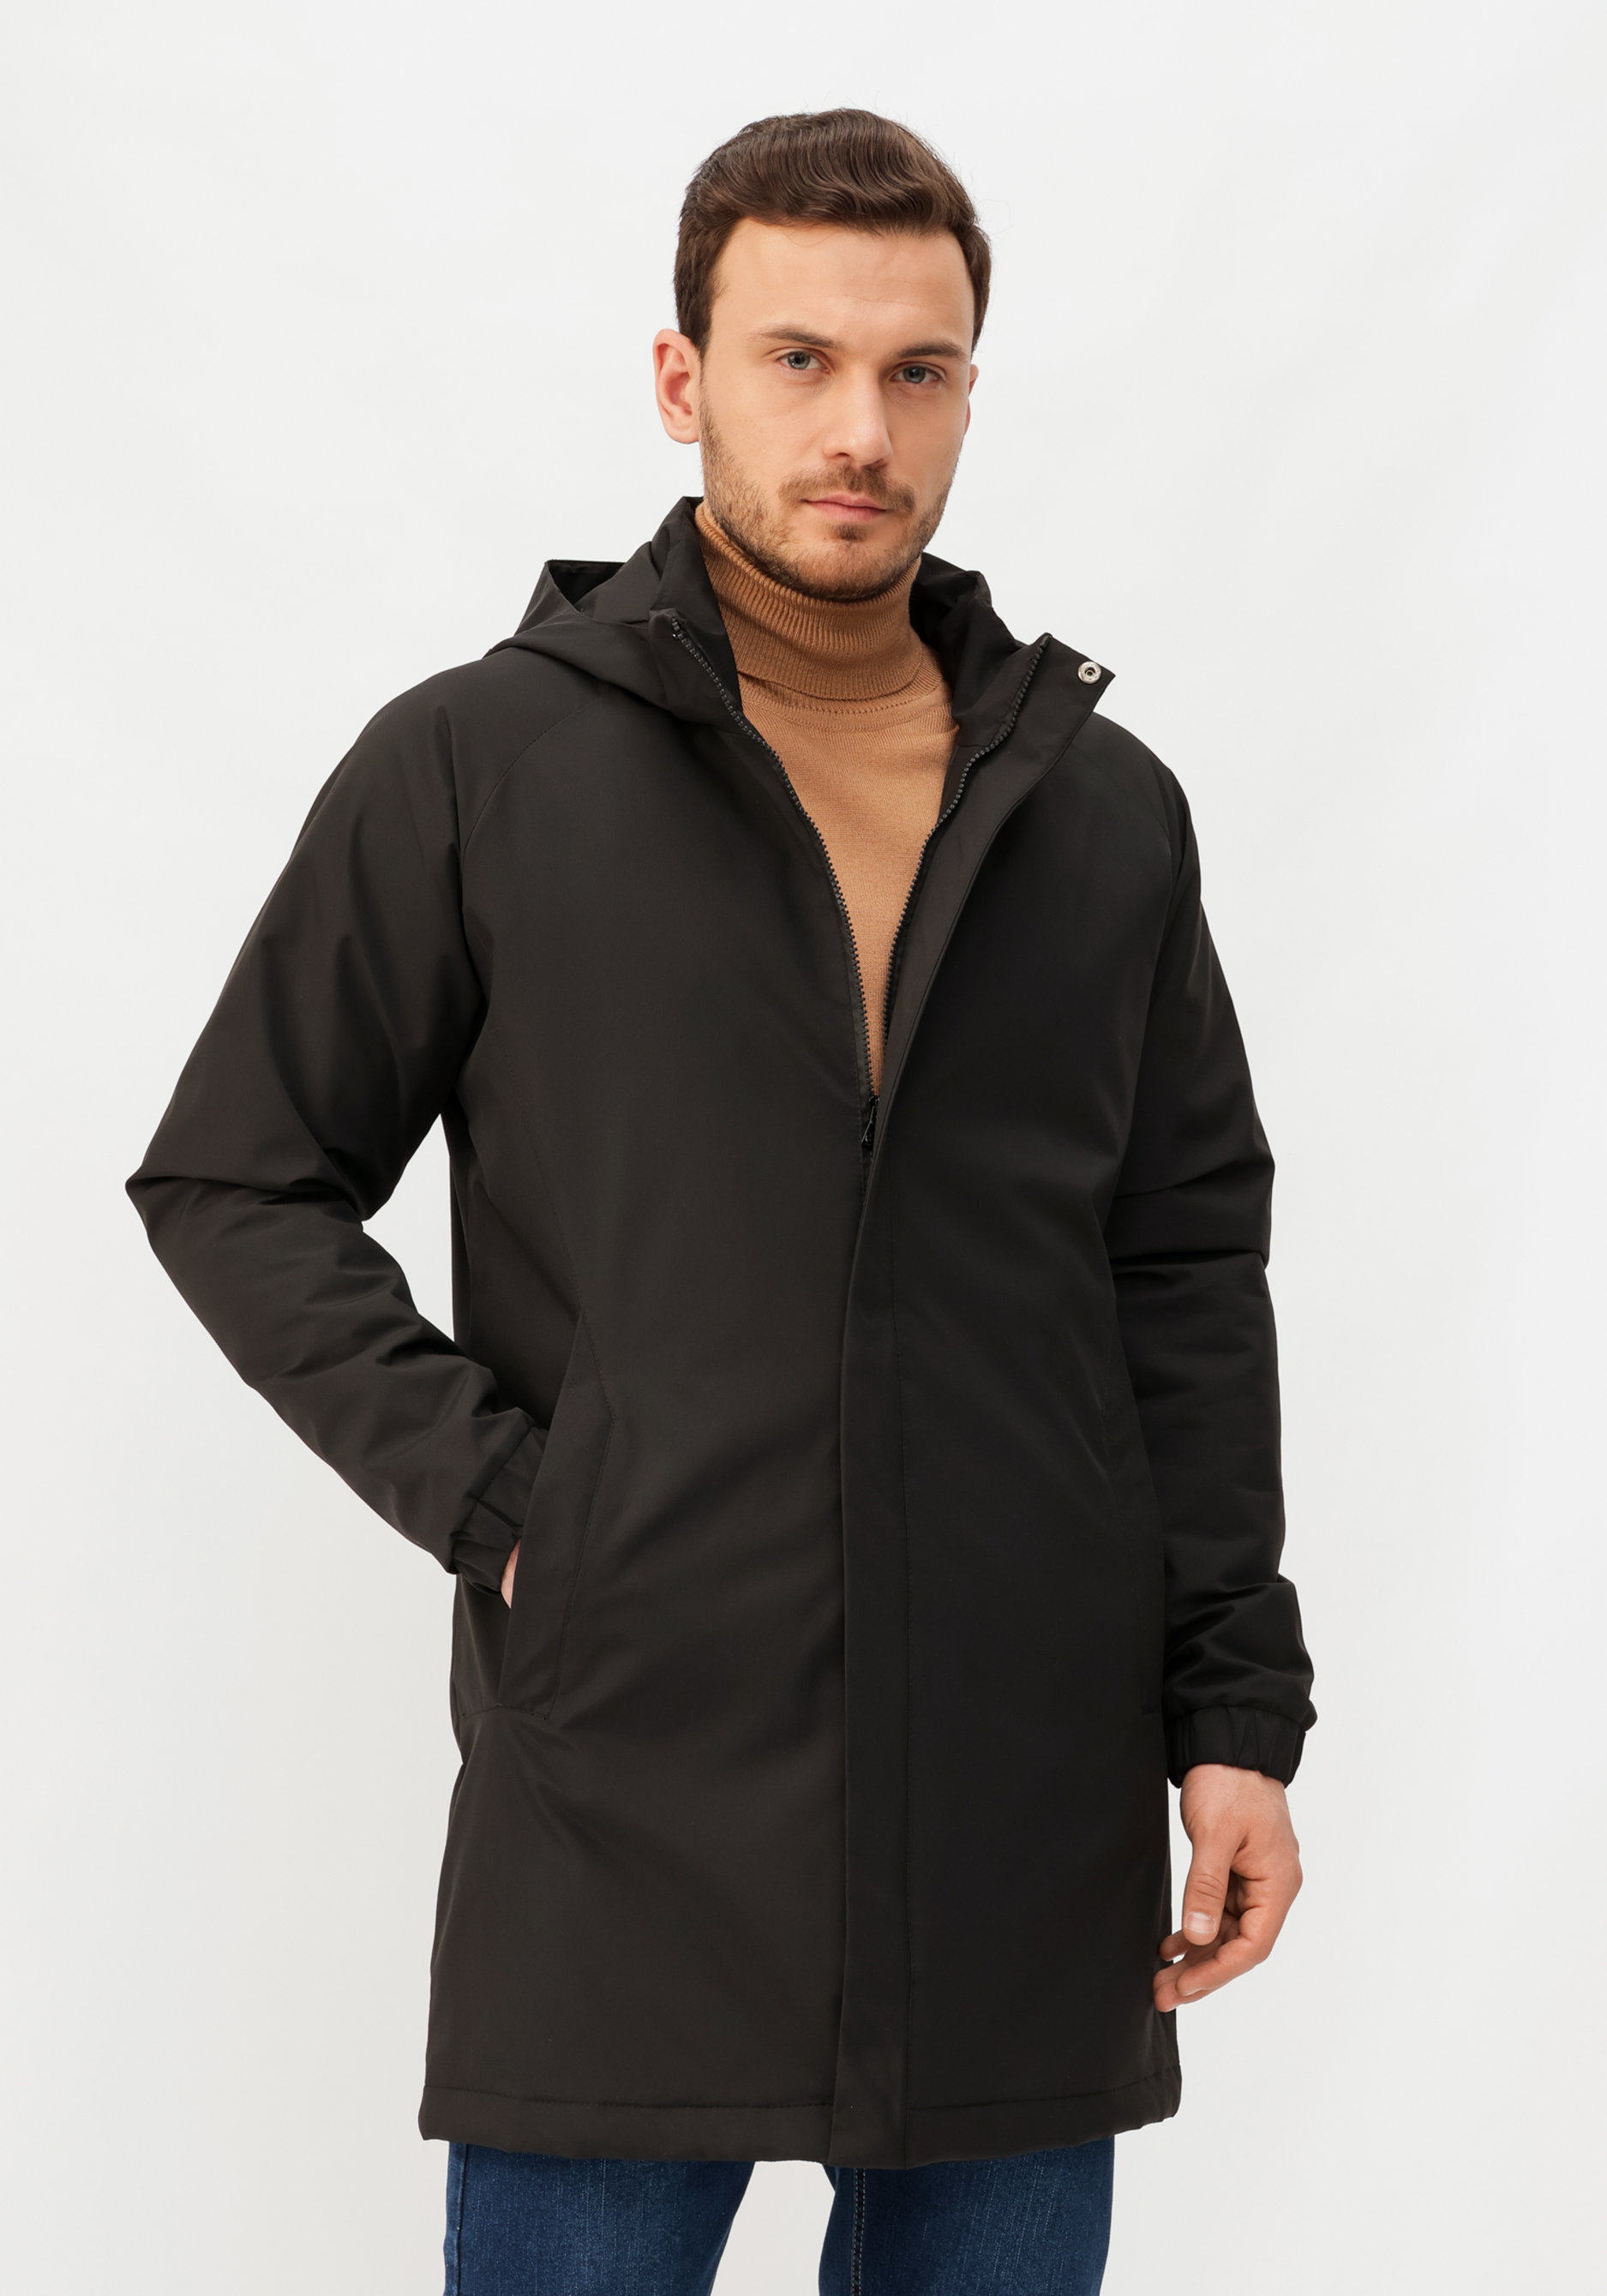 Куртка мужская демисезонная куртка ветровка